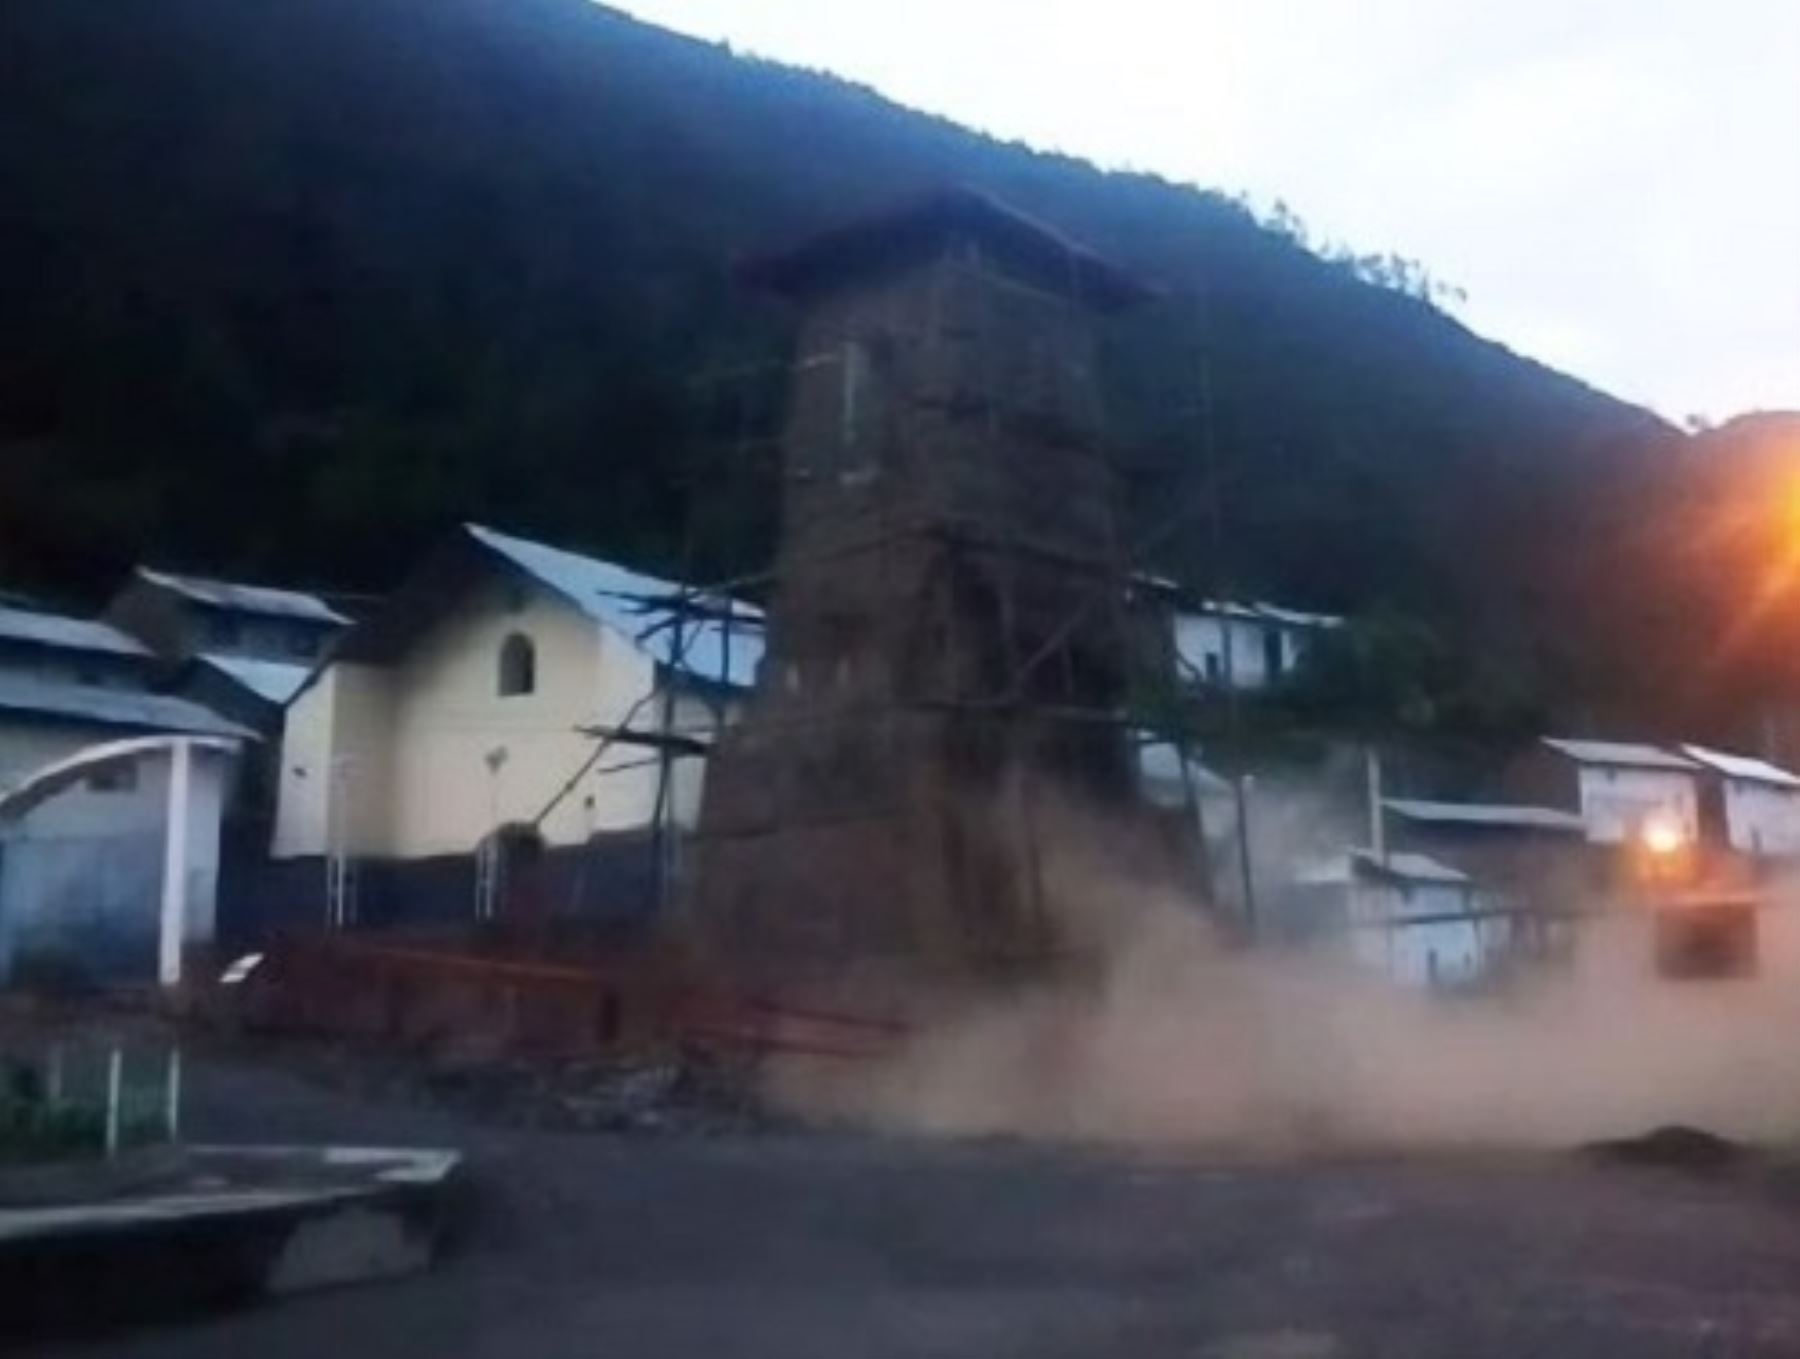 Torre colonial de Antapirca, región Pasco, se desploma a causa de las lluvias intensas.